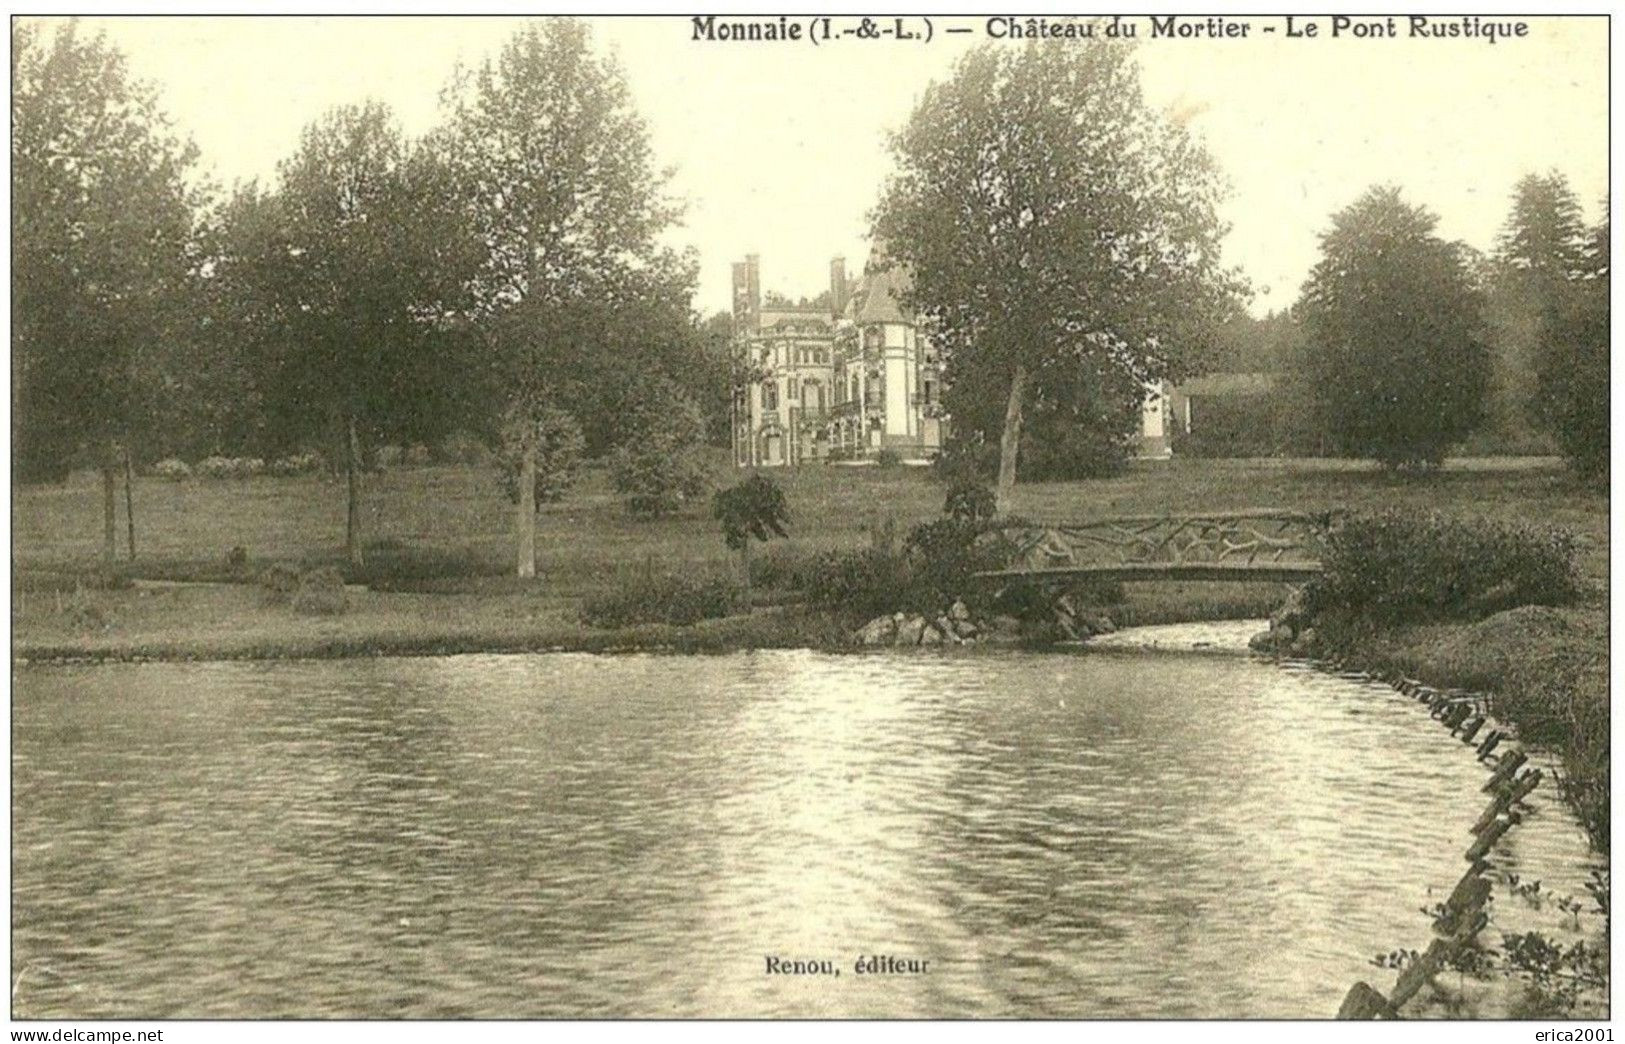 Monnaie. Chateau Du Mortier, Le Pont Rustique. - Monnaie